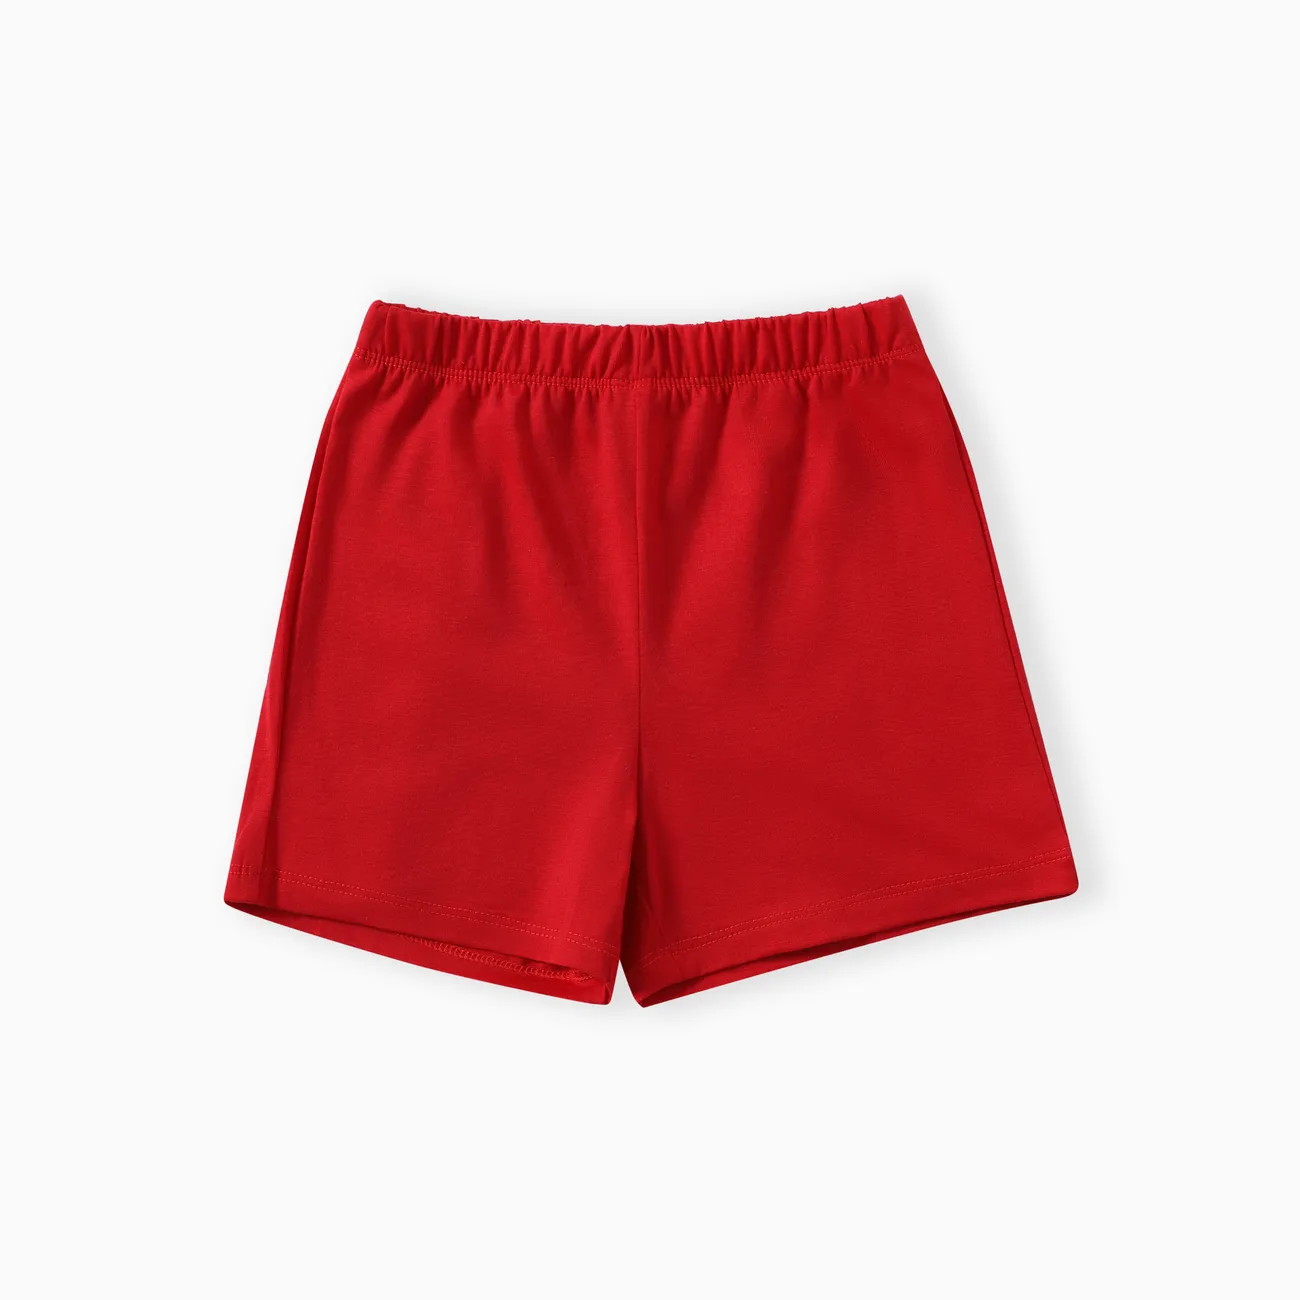 Kleinkind / Kind Junge / Mädchen 2-teiliges einfarbiges Reverspyjama-Set rot big image 1